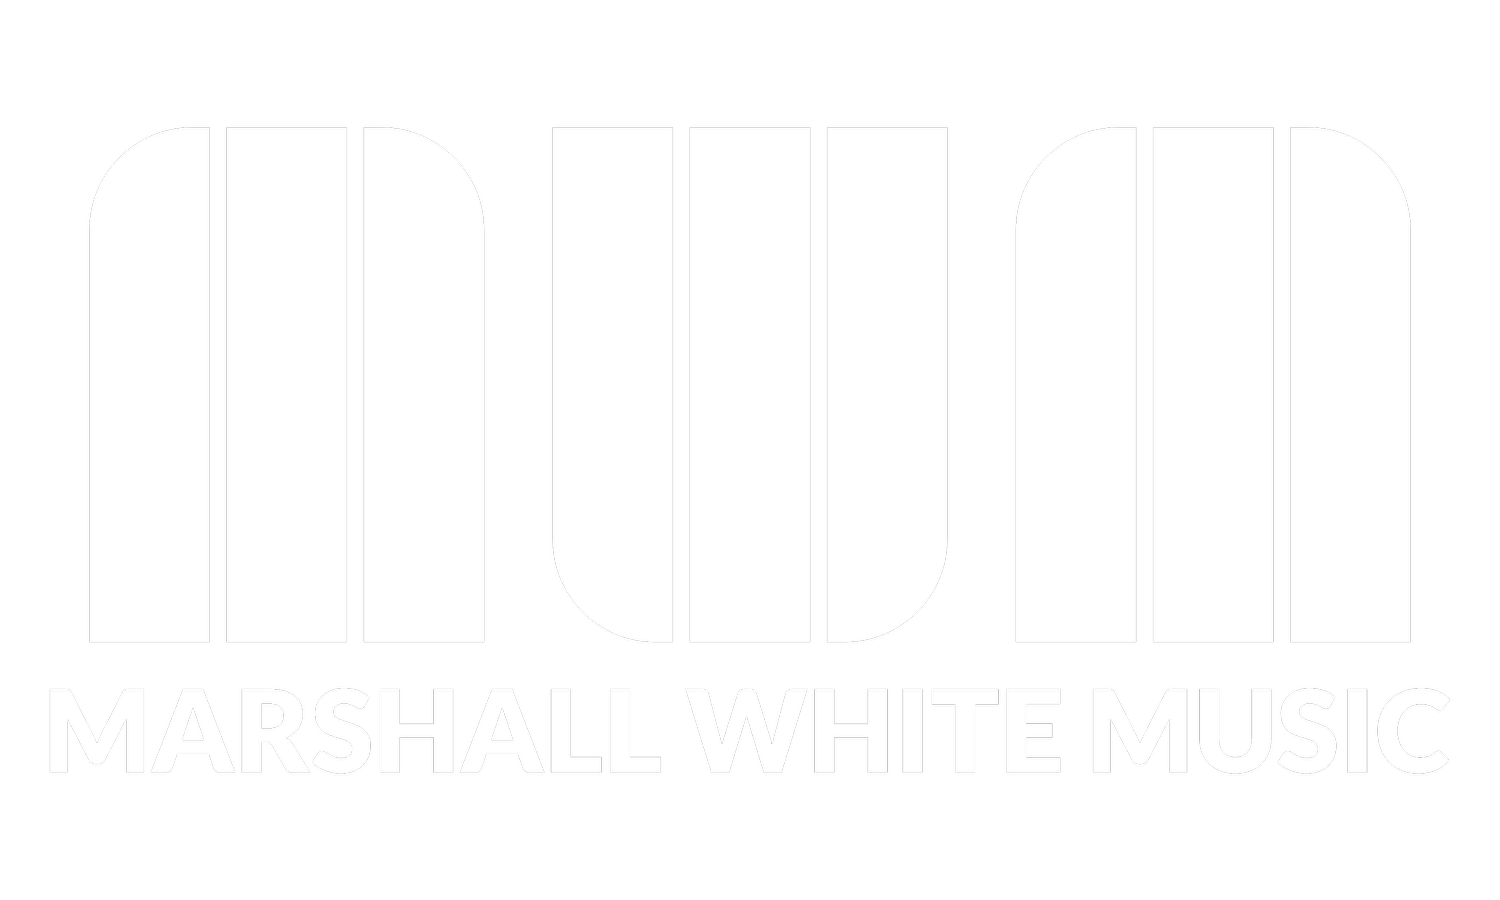 Marshall White Music